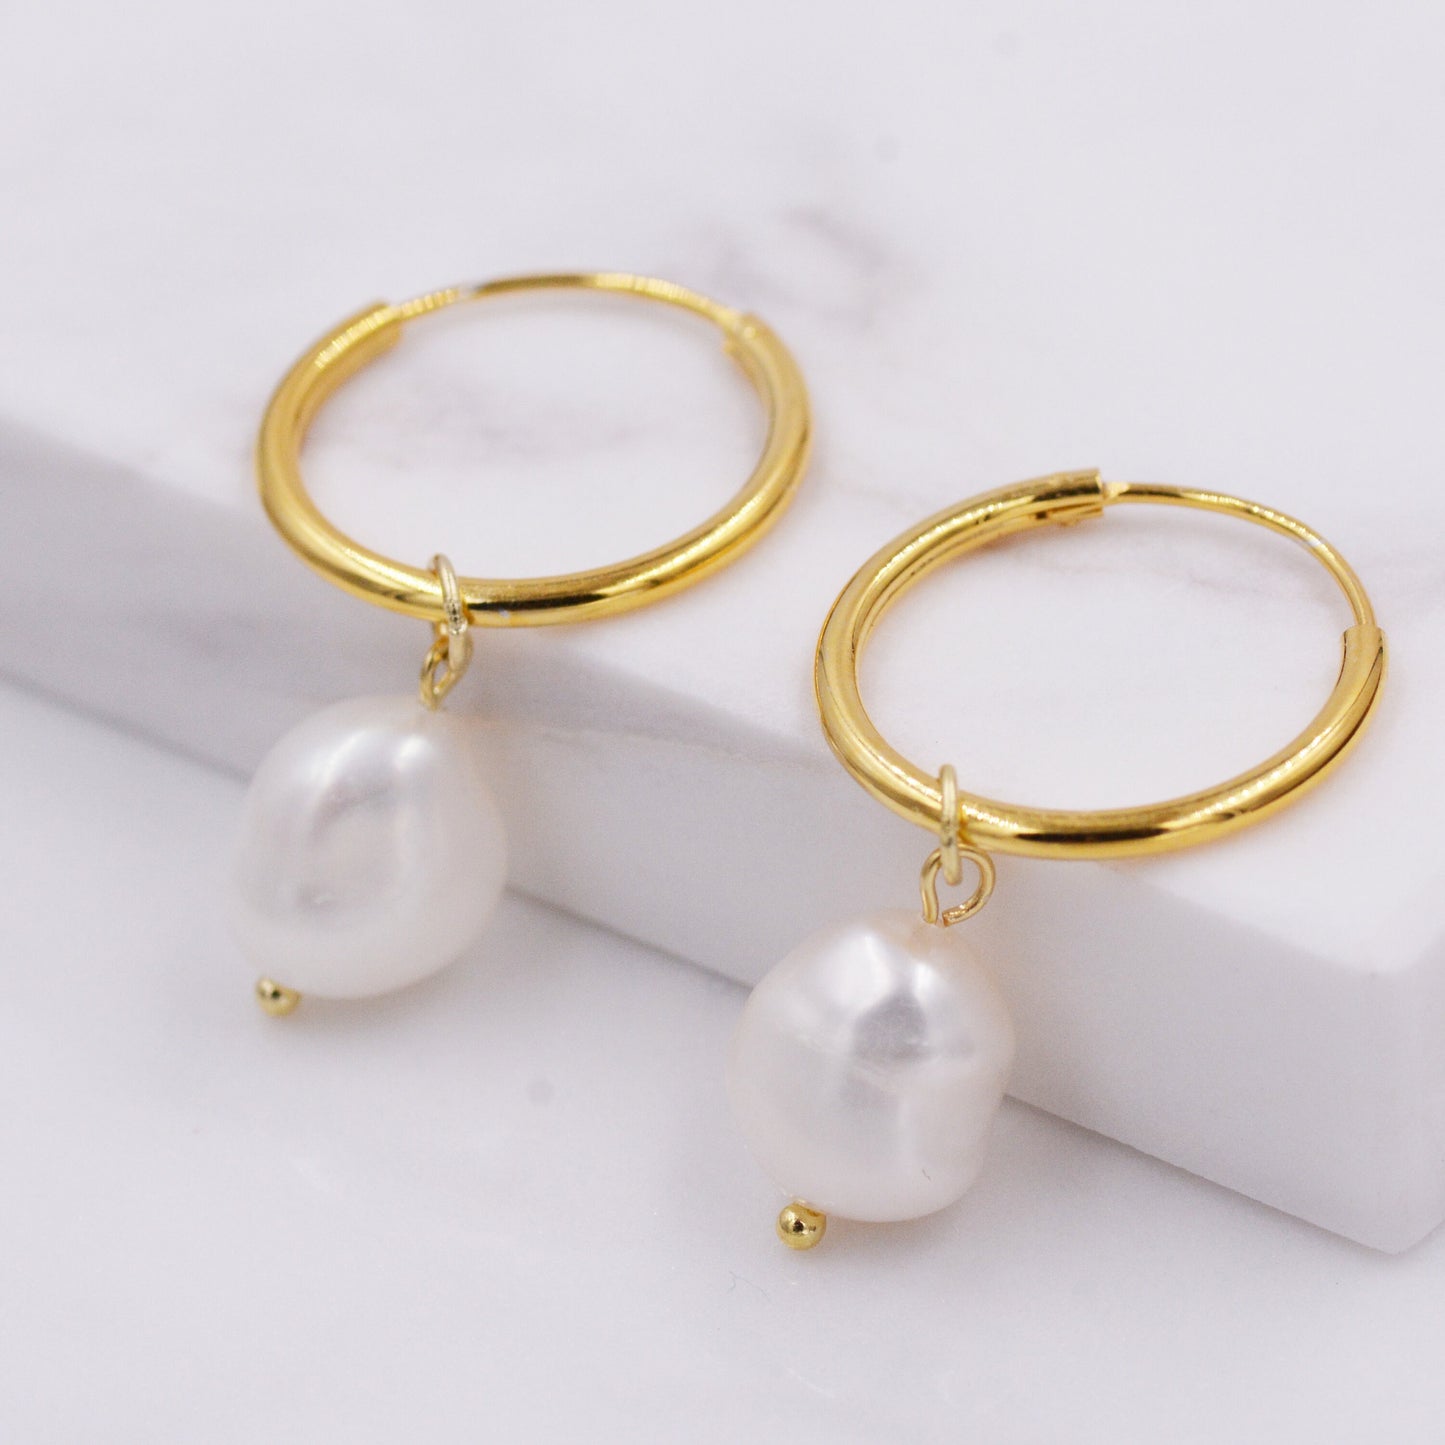 Genuine Baroque Pearl CZ Crystal Large Huggie Hoop Earrings in Sterling Silver, Gold or Silver,  Hoop Earrings R99